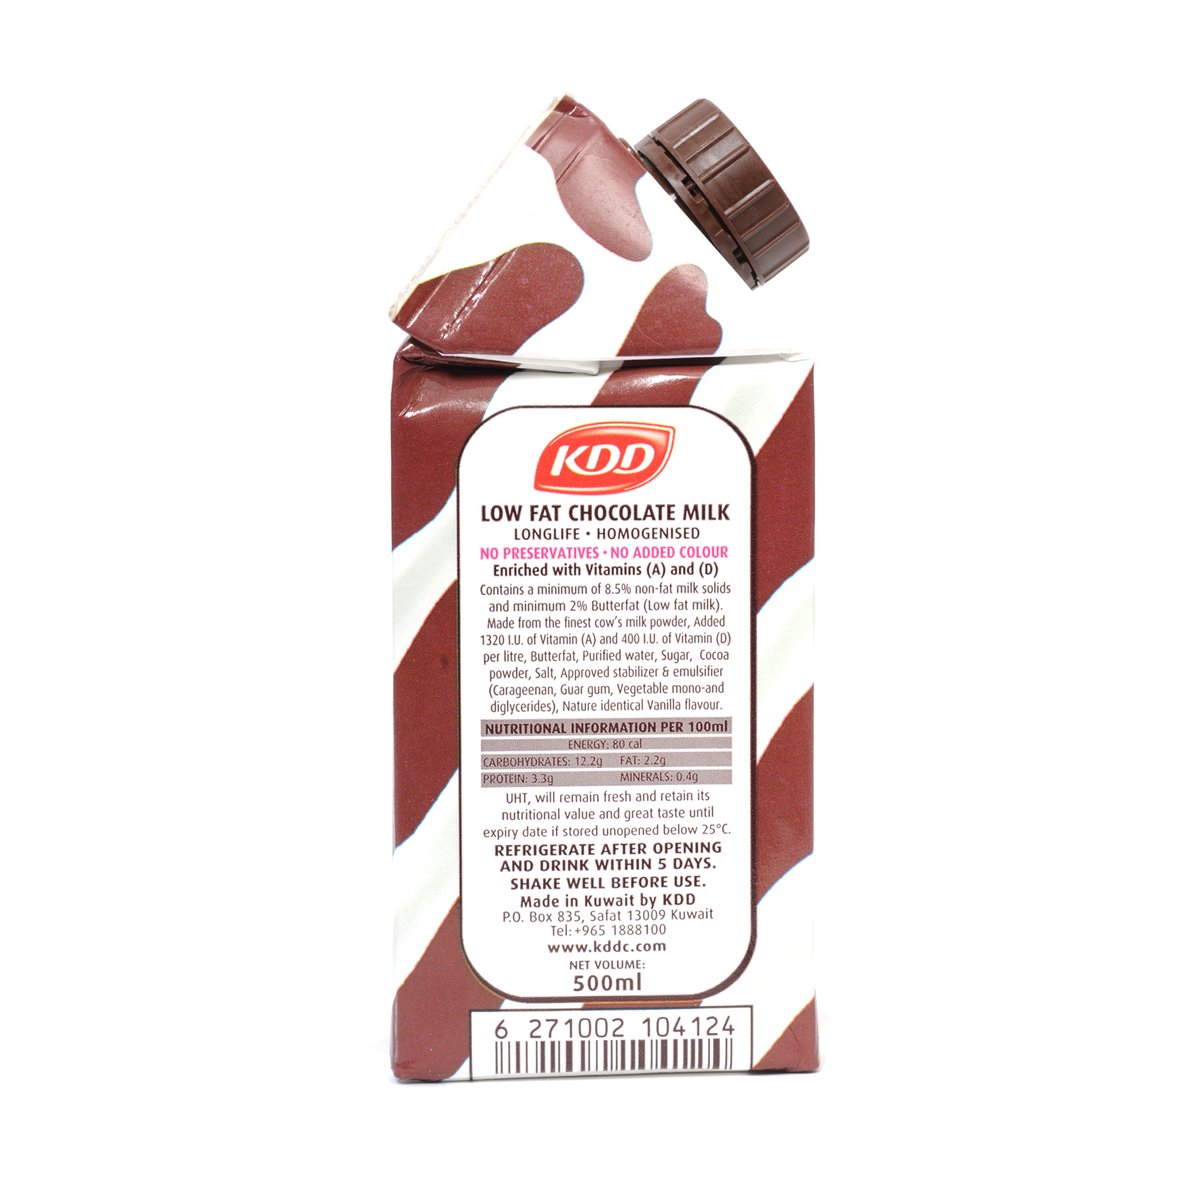 KDD Low Fat Chocolate Milk 500ml